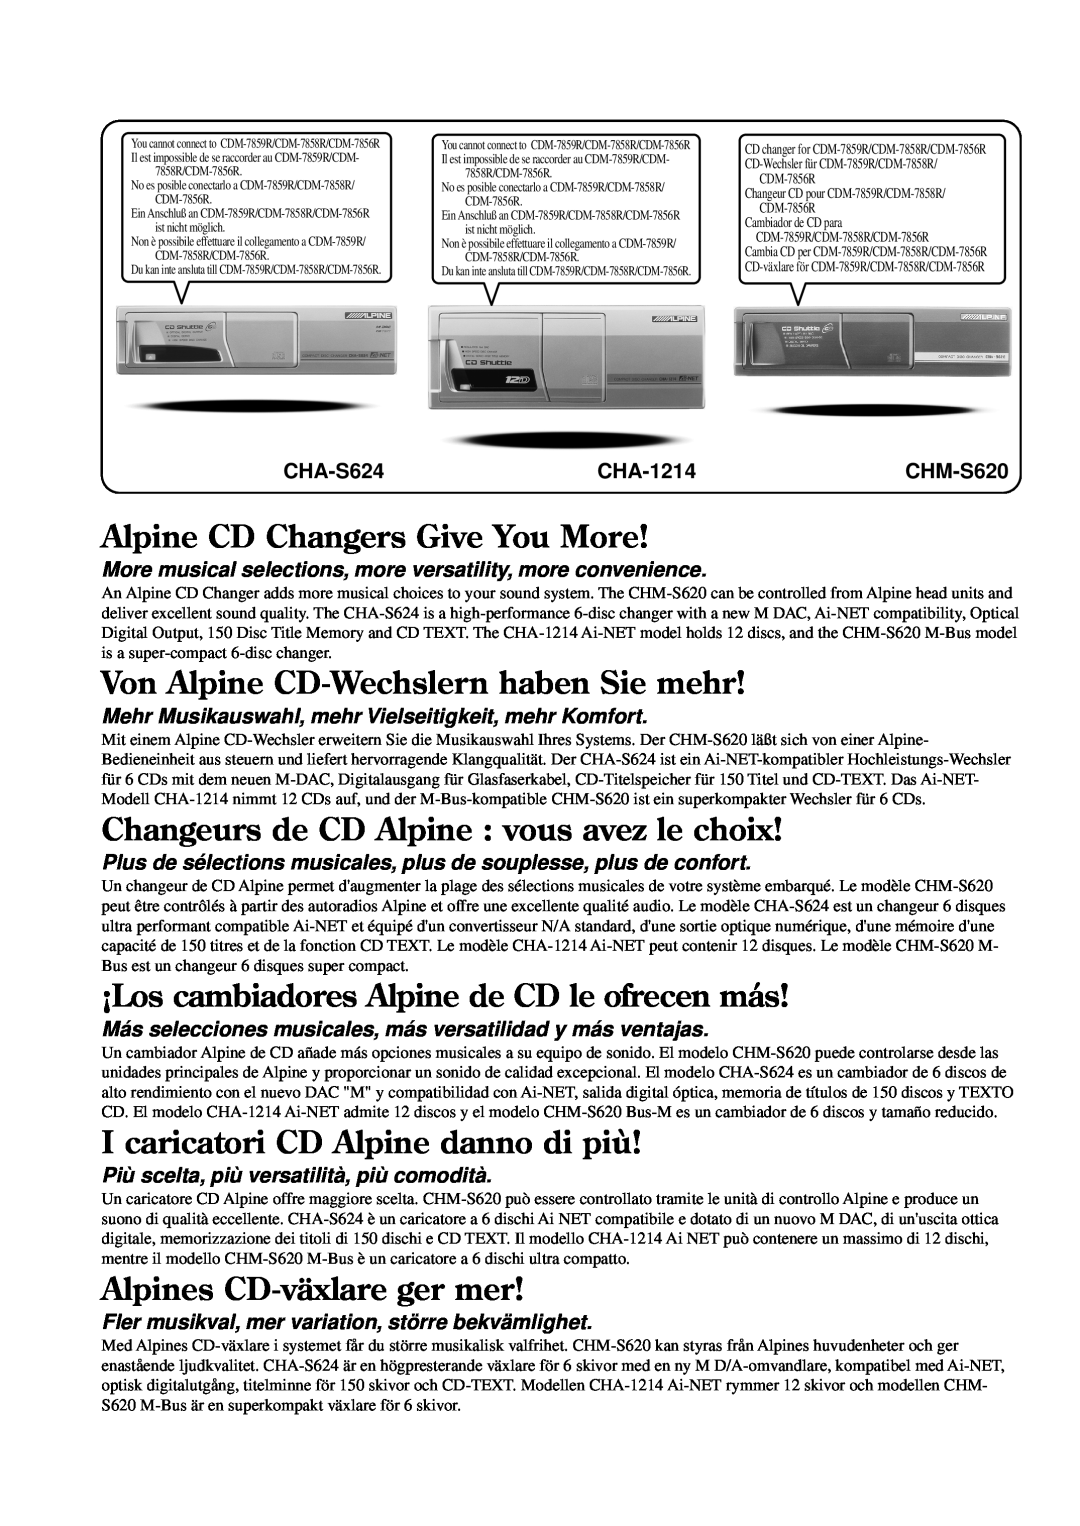 Alpine CDM-7856R Alpine CD Changers Give You More, Von Alpine CD-Wechslernhaben Sie mehr, Alpines CD-växlareger mer 